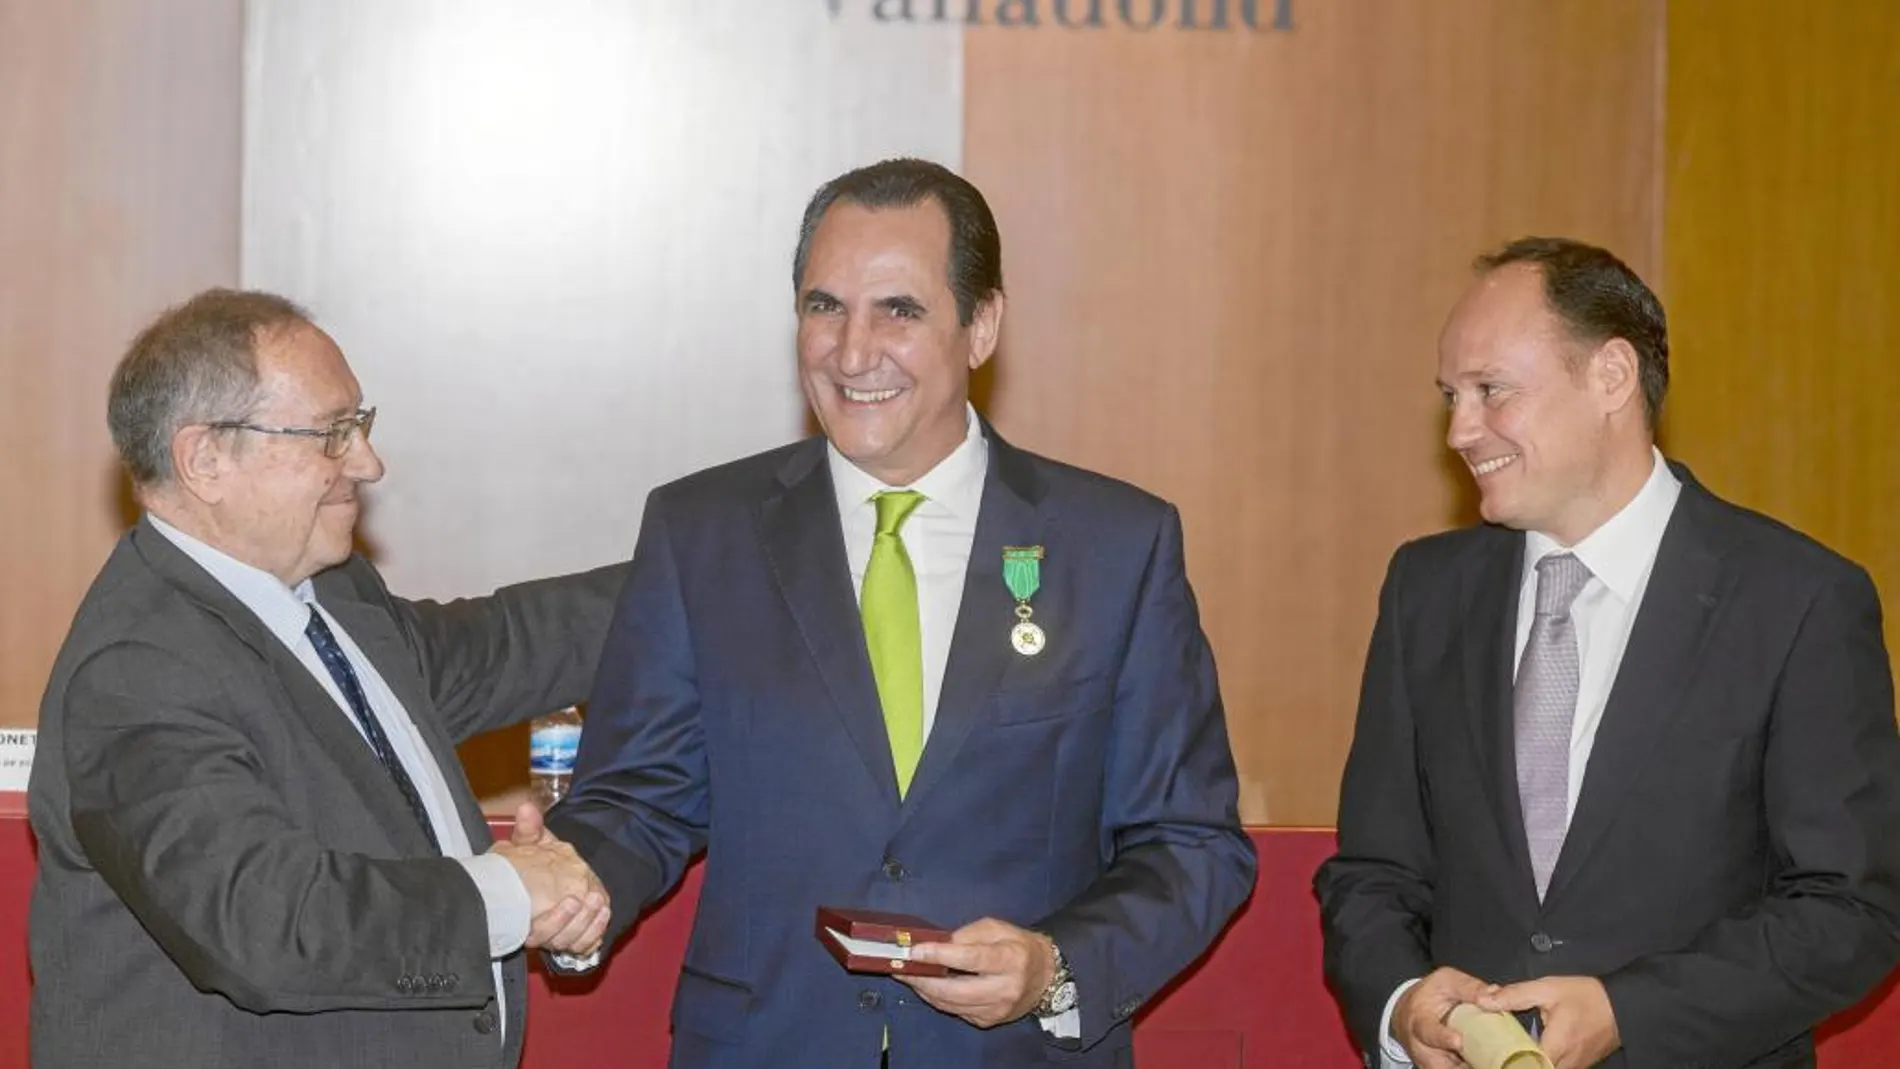 José Luis Bonet, impone la medalla a José Rolando Álvarez. Junto a ellos, el presidente de la Cámara vallisoletana, Carlos Villar